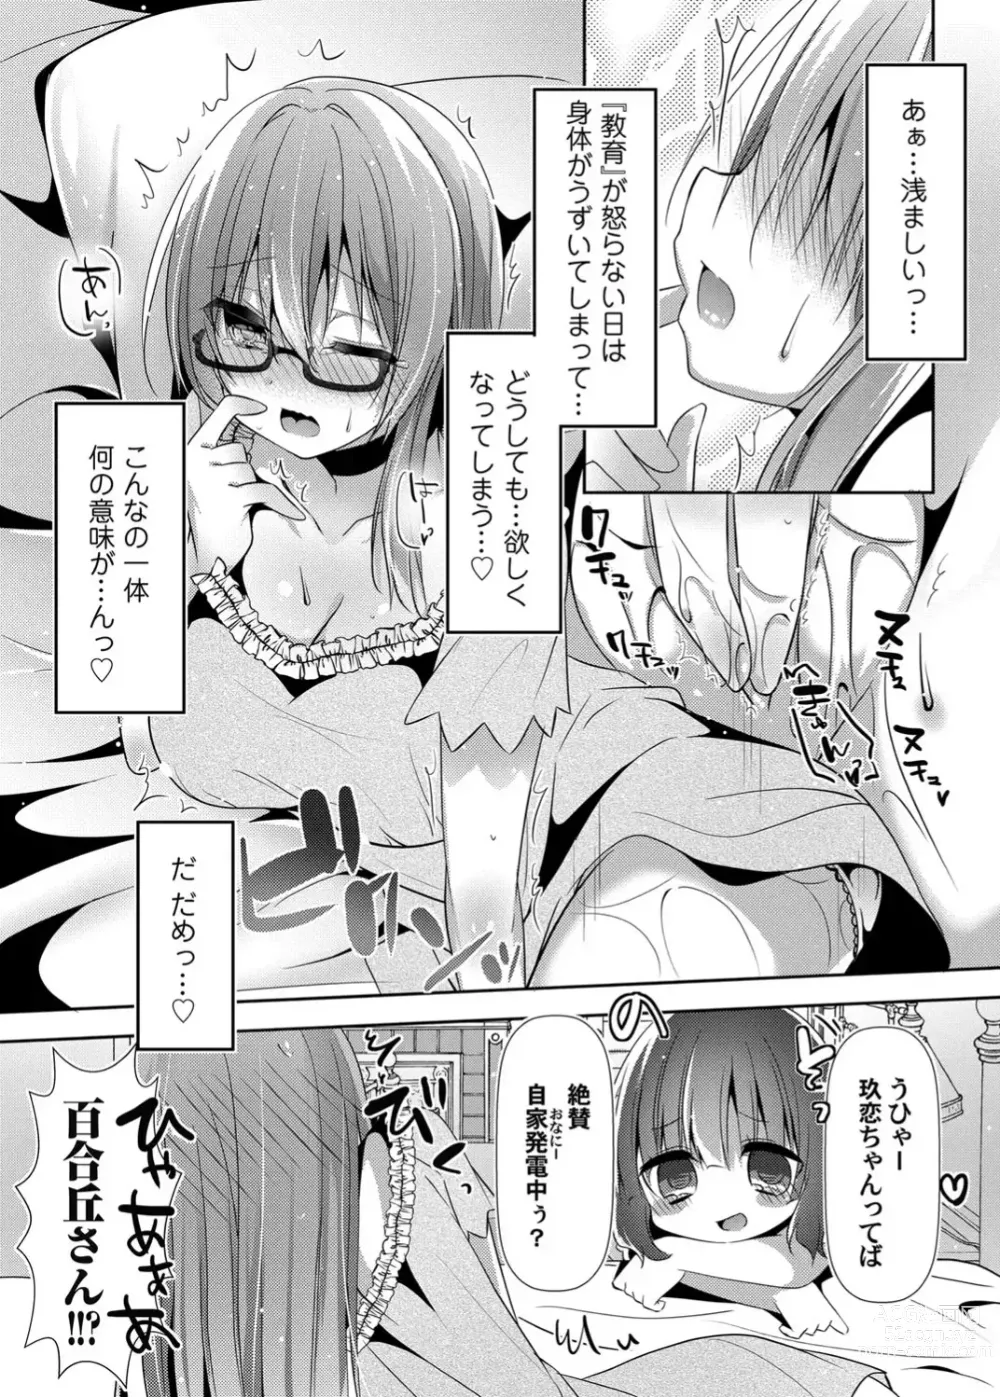 Page 54 of doujinshi Botsuraku Lady no Hakoniwa Showtime